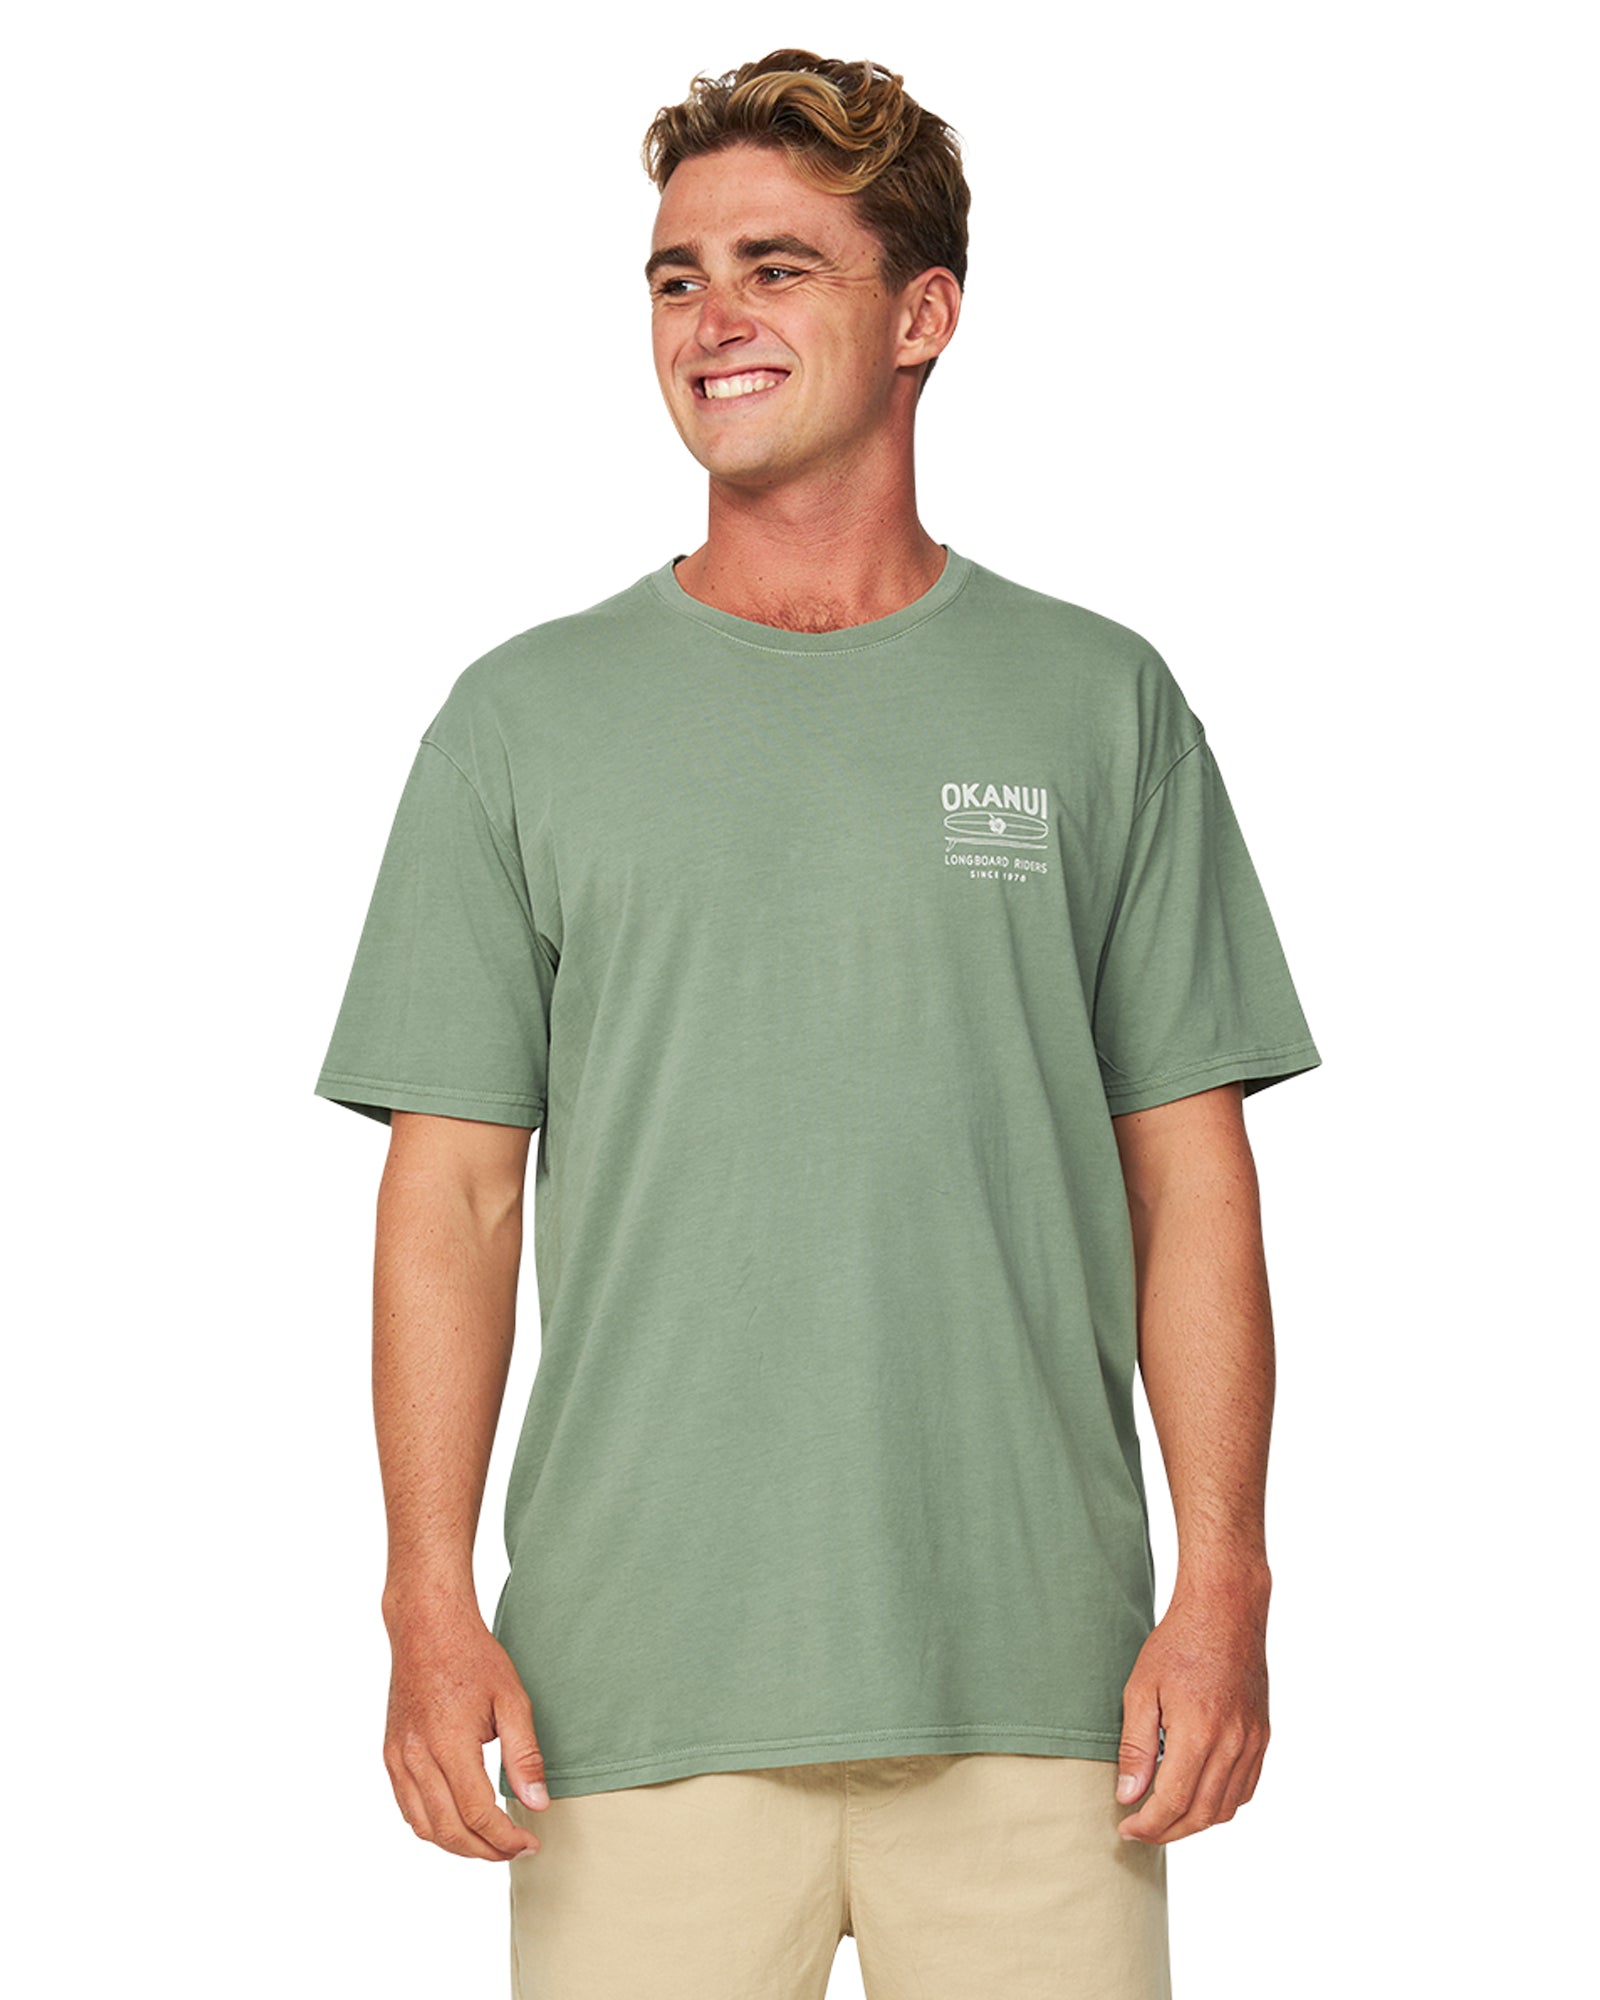 Mens - T-Shirt - Boardrider - Forrest